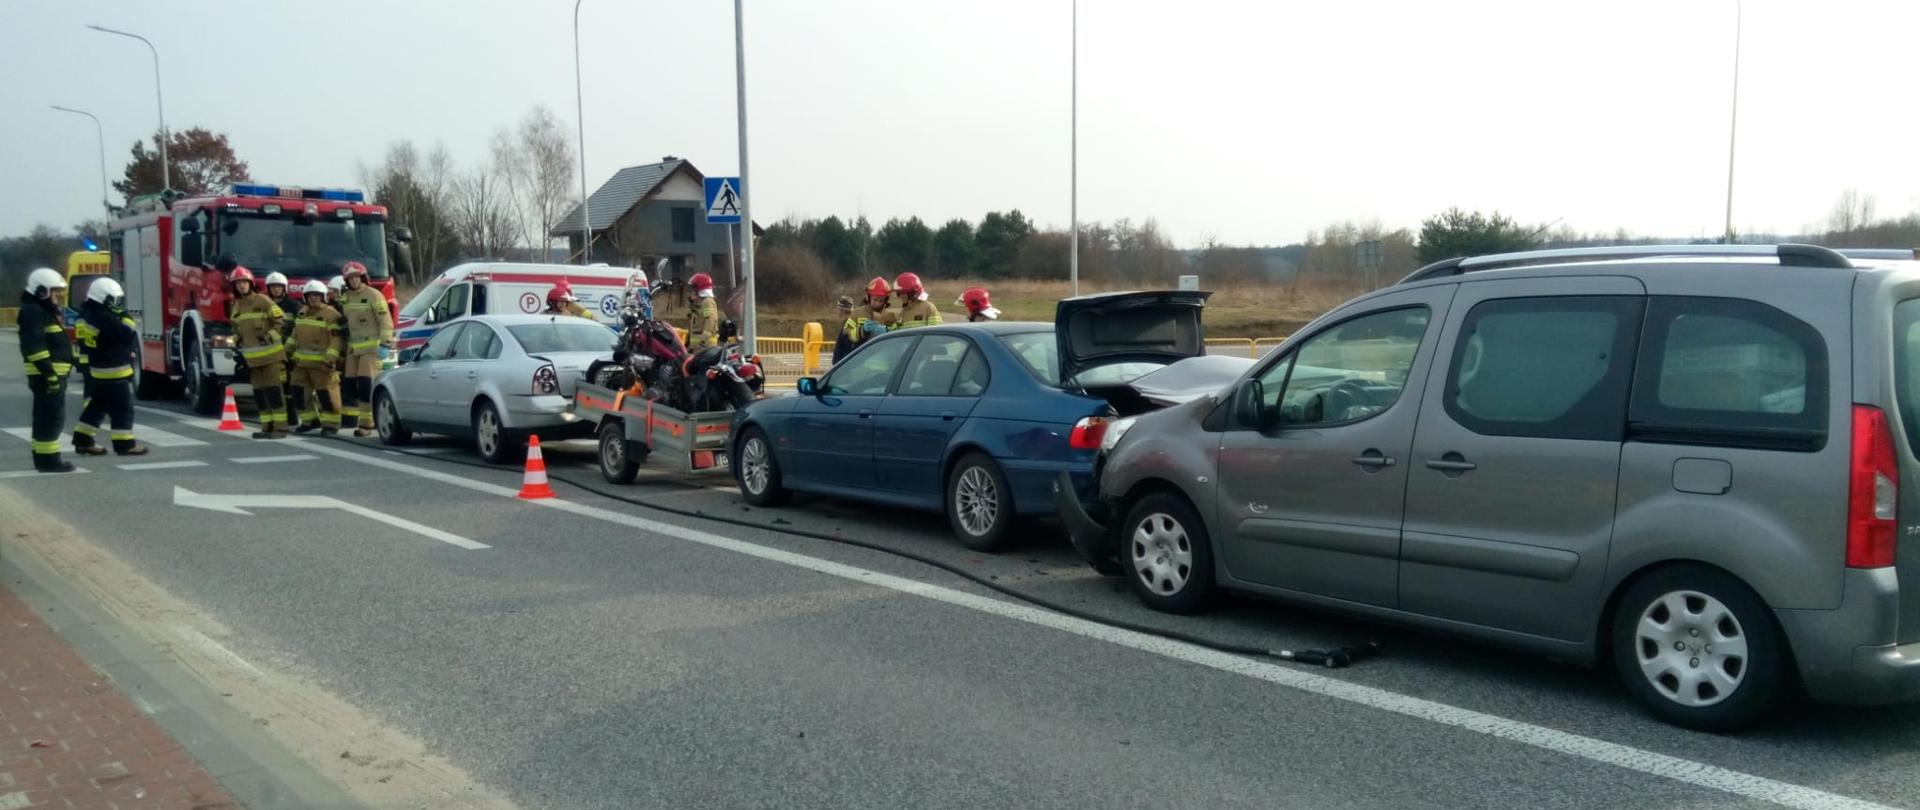 Zdjęcie przedstawia wszystkie biorące udział w wypadku samochody stojące na pasie drogowym. W głębi widać pojazdy służb ratowniczych oraz stojących strażaków. 